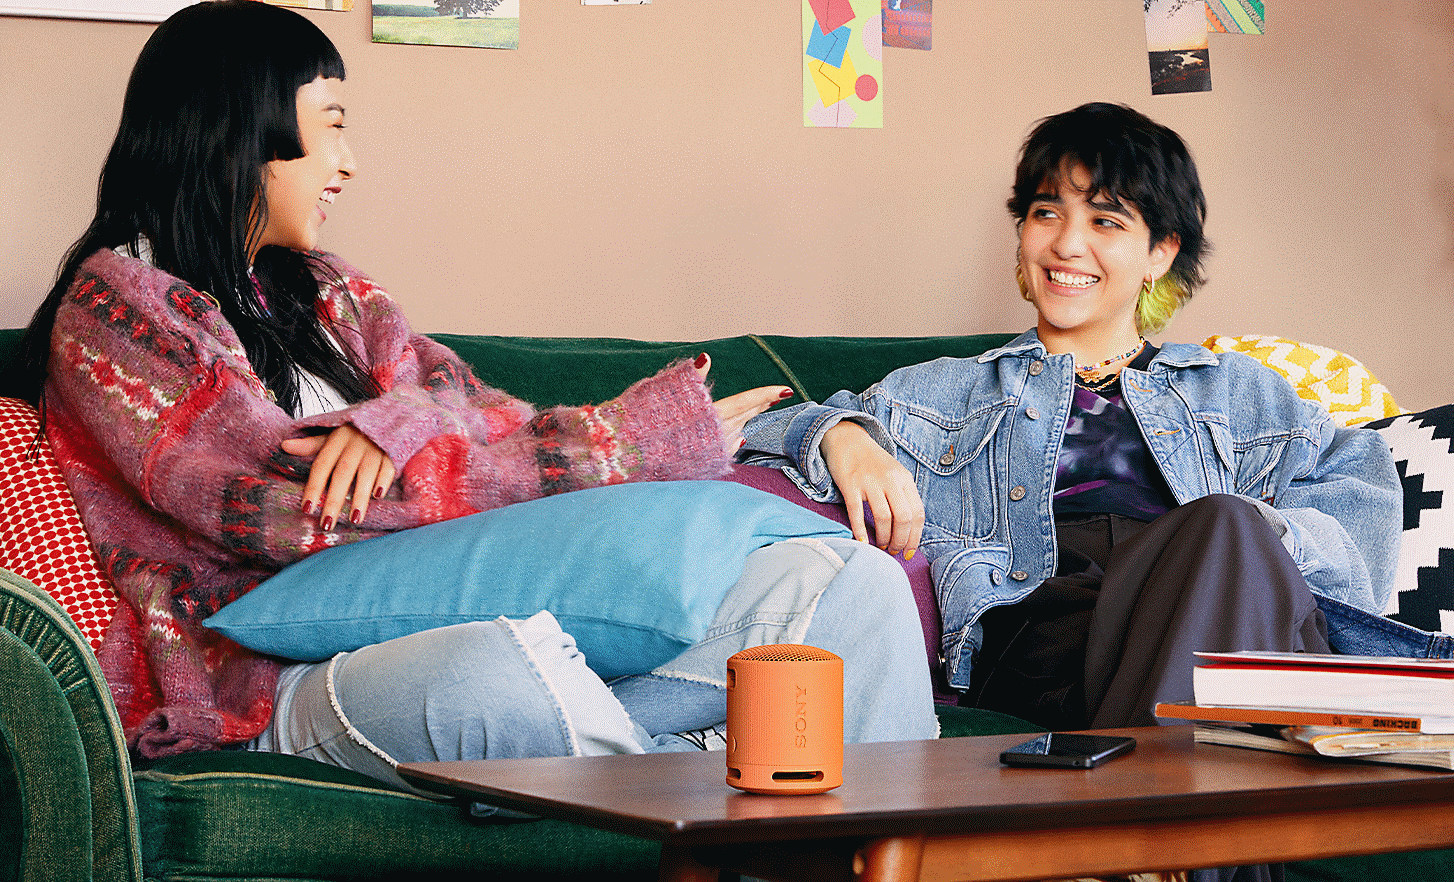 Imagen de dos personas sonriendo sentadas en un sofá con un parlante SRS-XB100 sobre la mesita que tienen enfrente